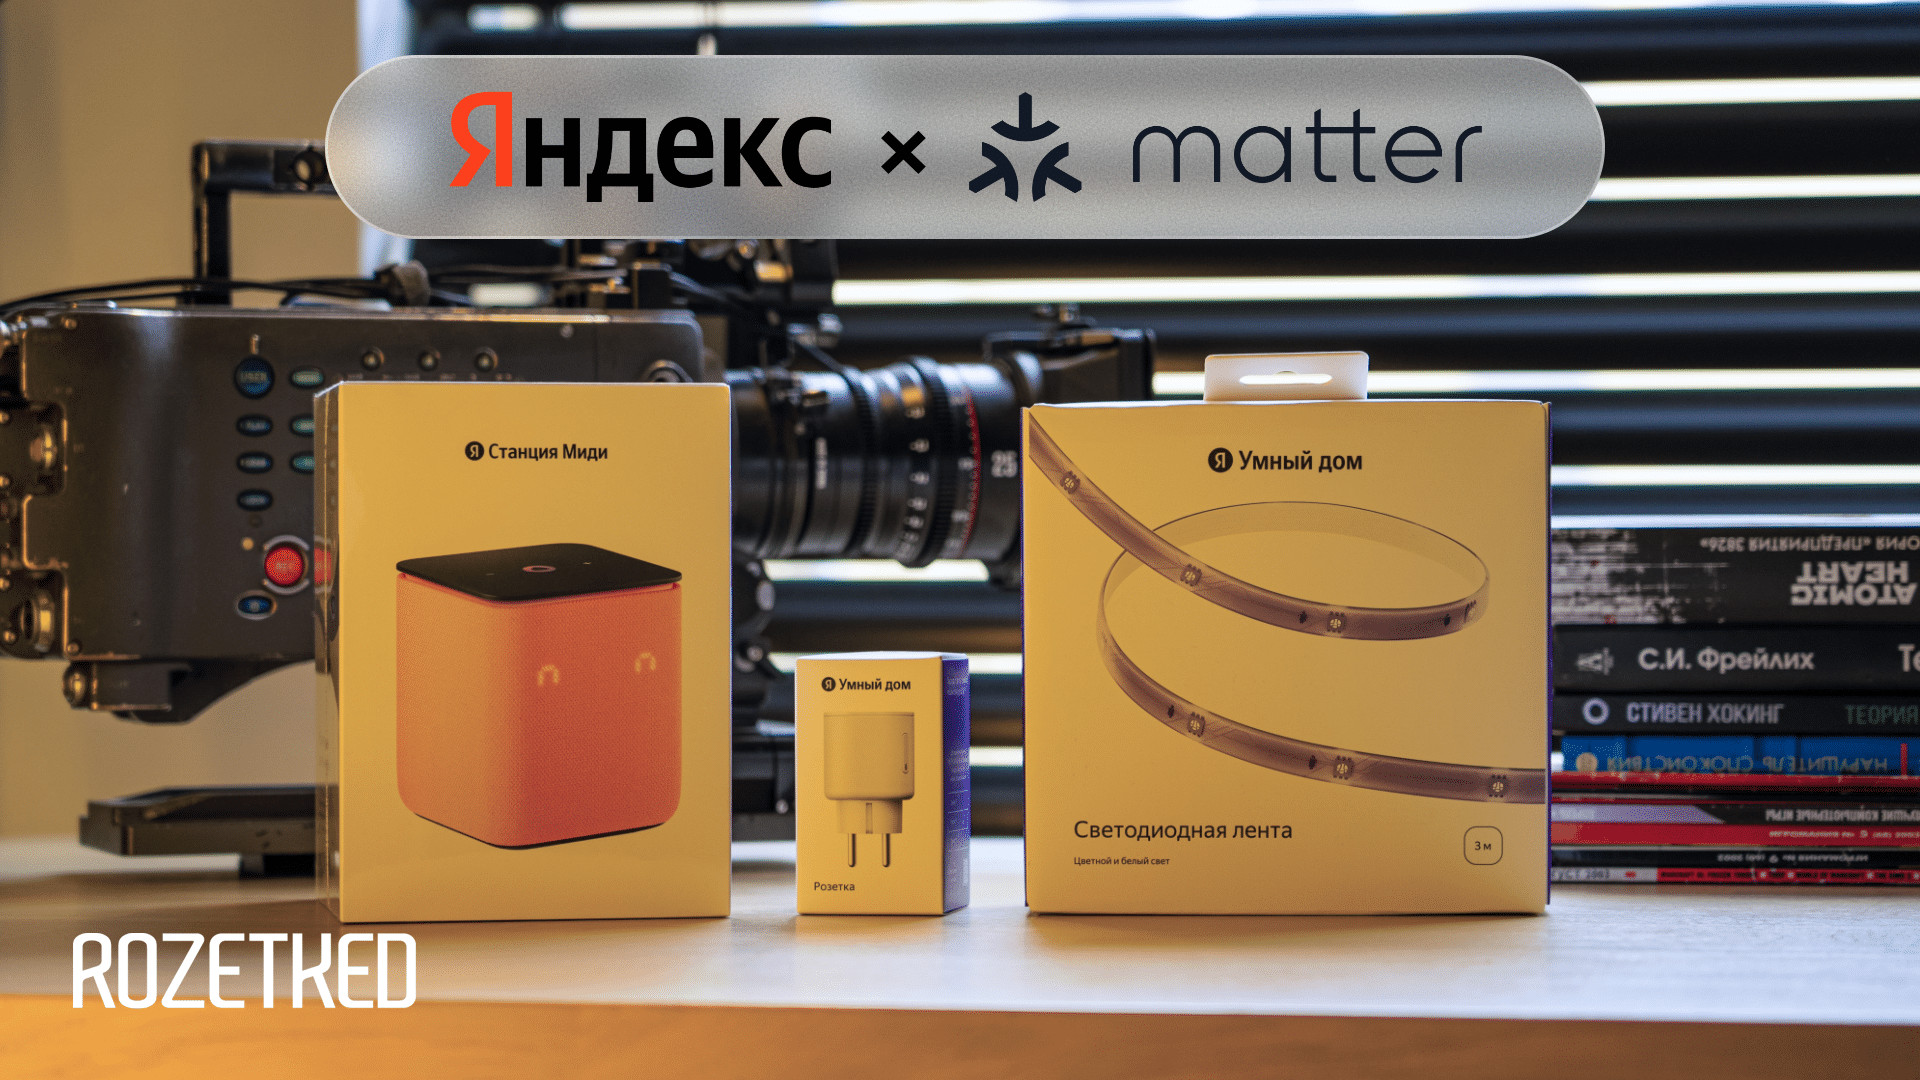 «Яндекс» выпустил первые умные устройства с поддержкой Matter. Чем прекрасен этот протокол